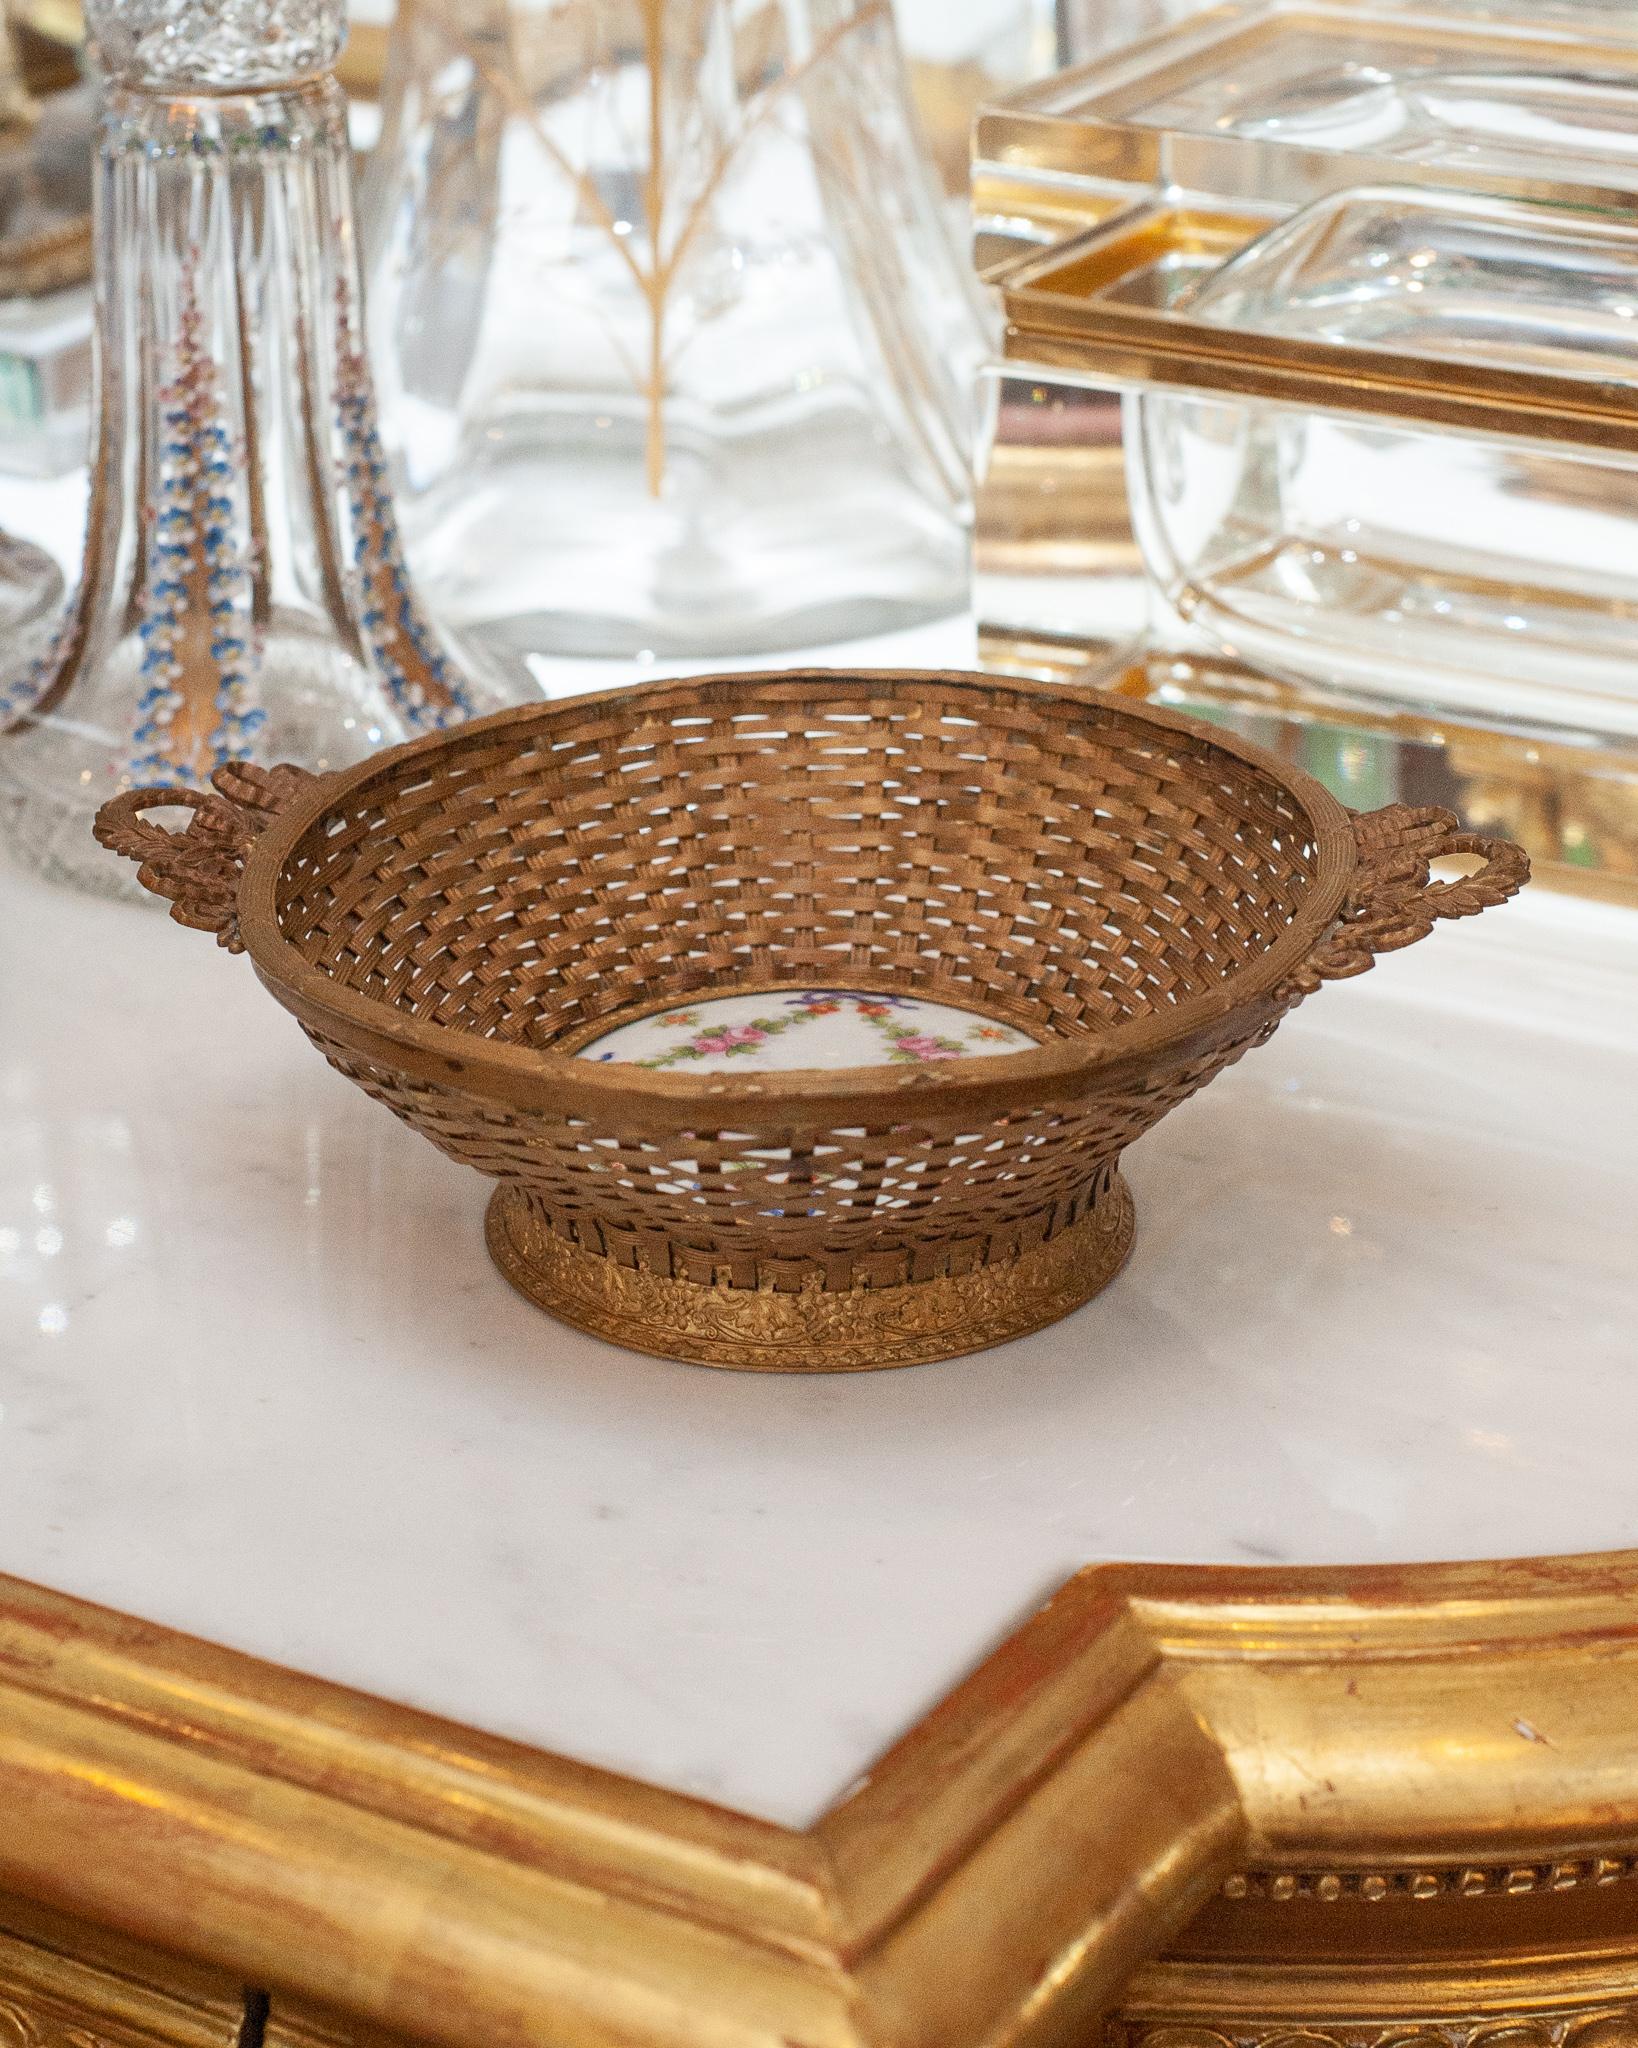 Un superbe panier ancien en bronze tressé français avec une plaque centrale en porcelaine imprimée à la main. Magnifiquement et délicatement construit, ce panier est un complément parfait à toute table.